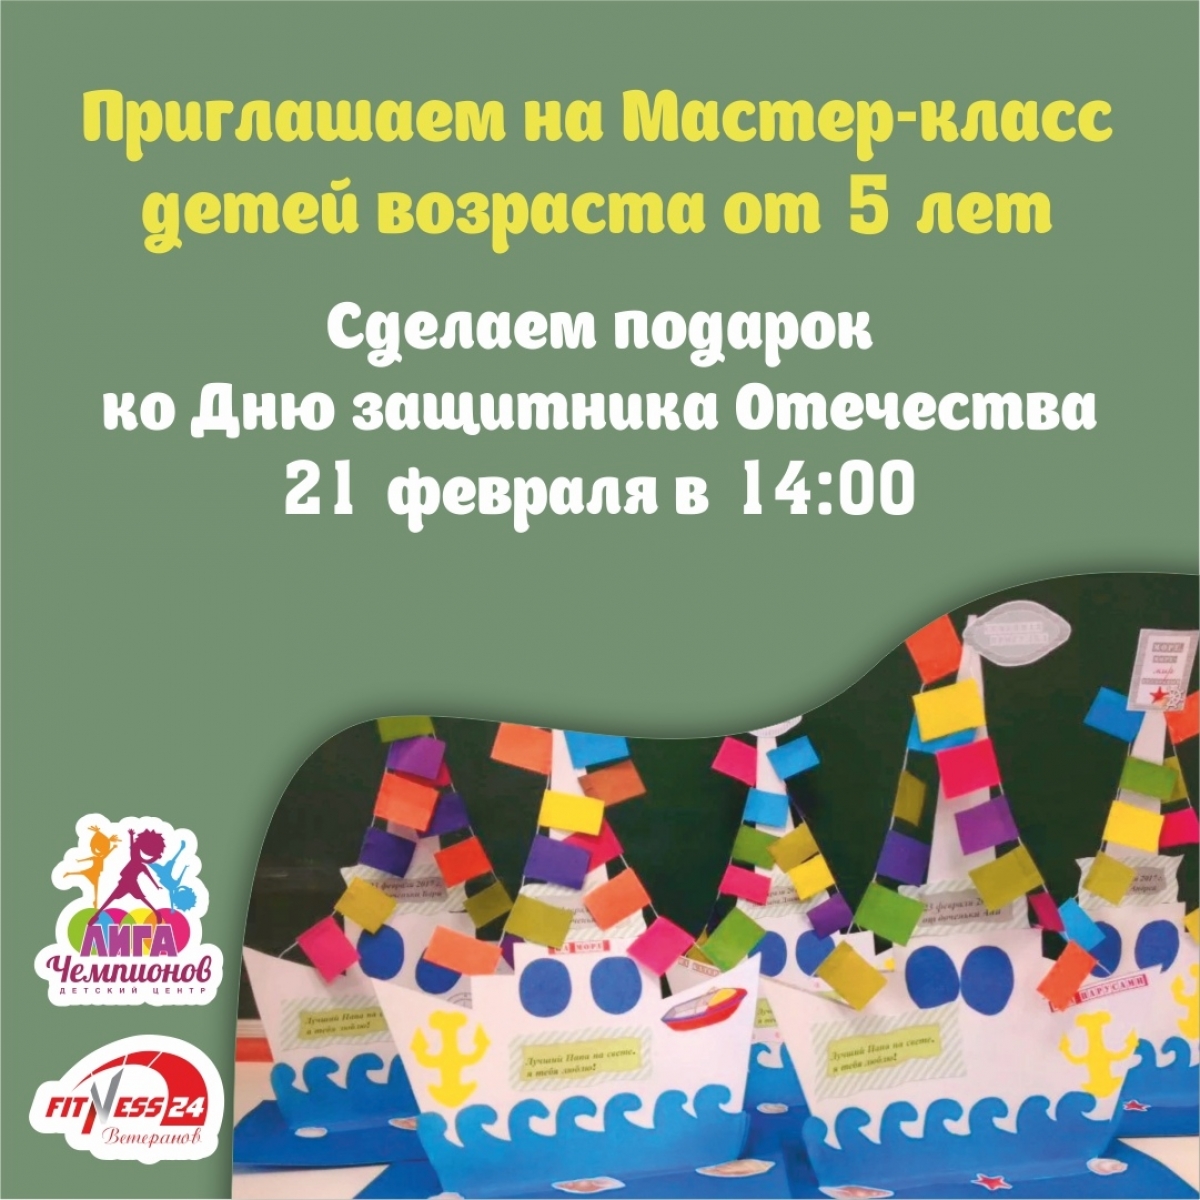 Мастер-класс для детей ко Дню защитника Отечества в Fitness24 Ветеранов!